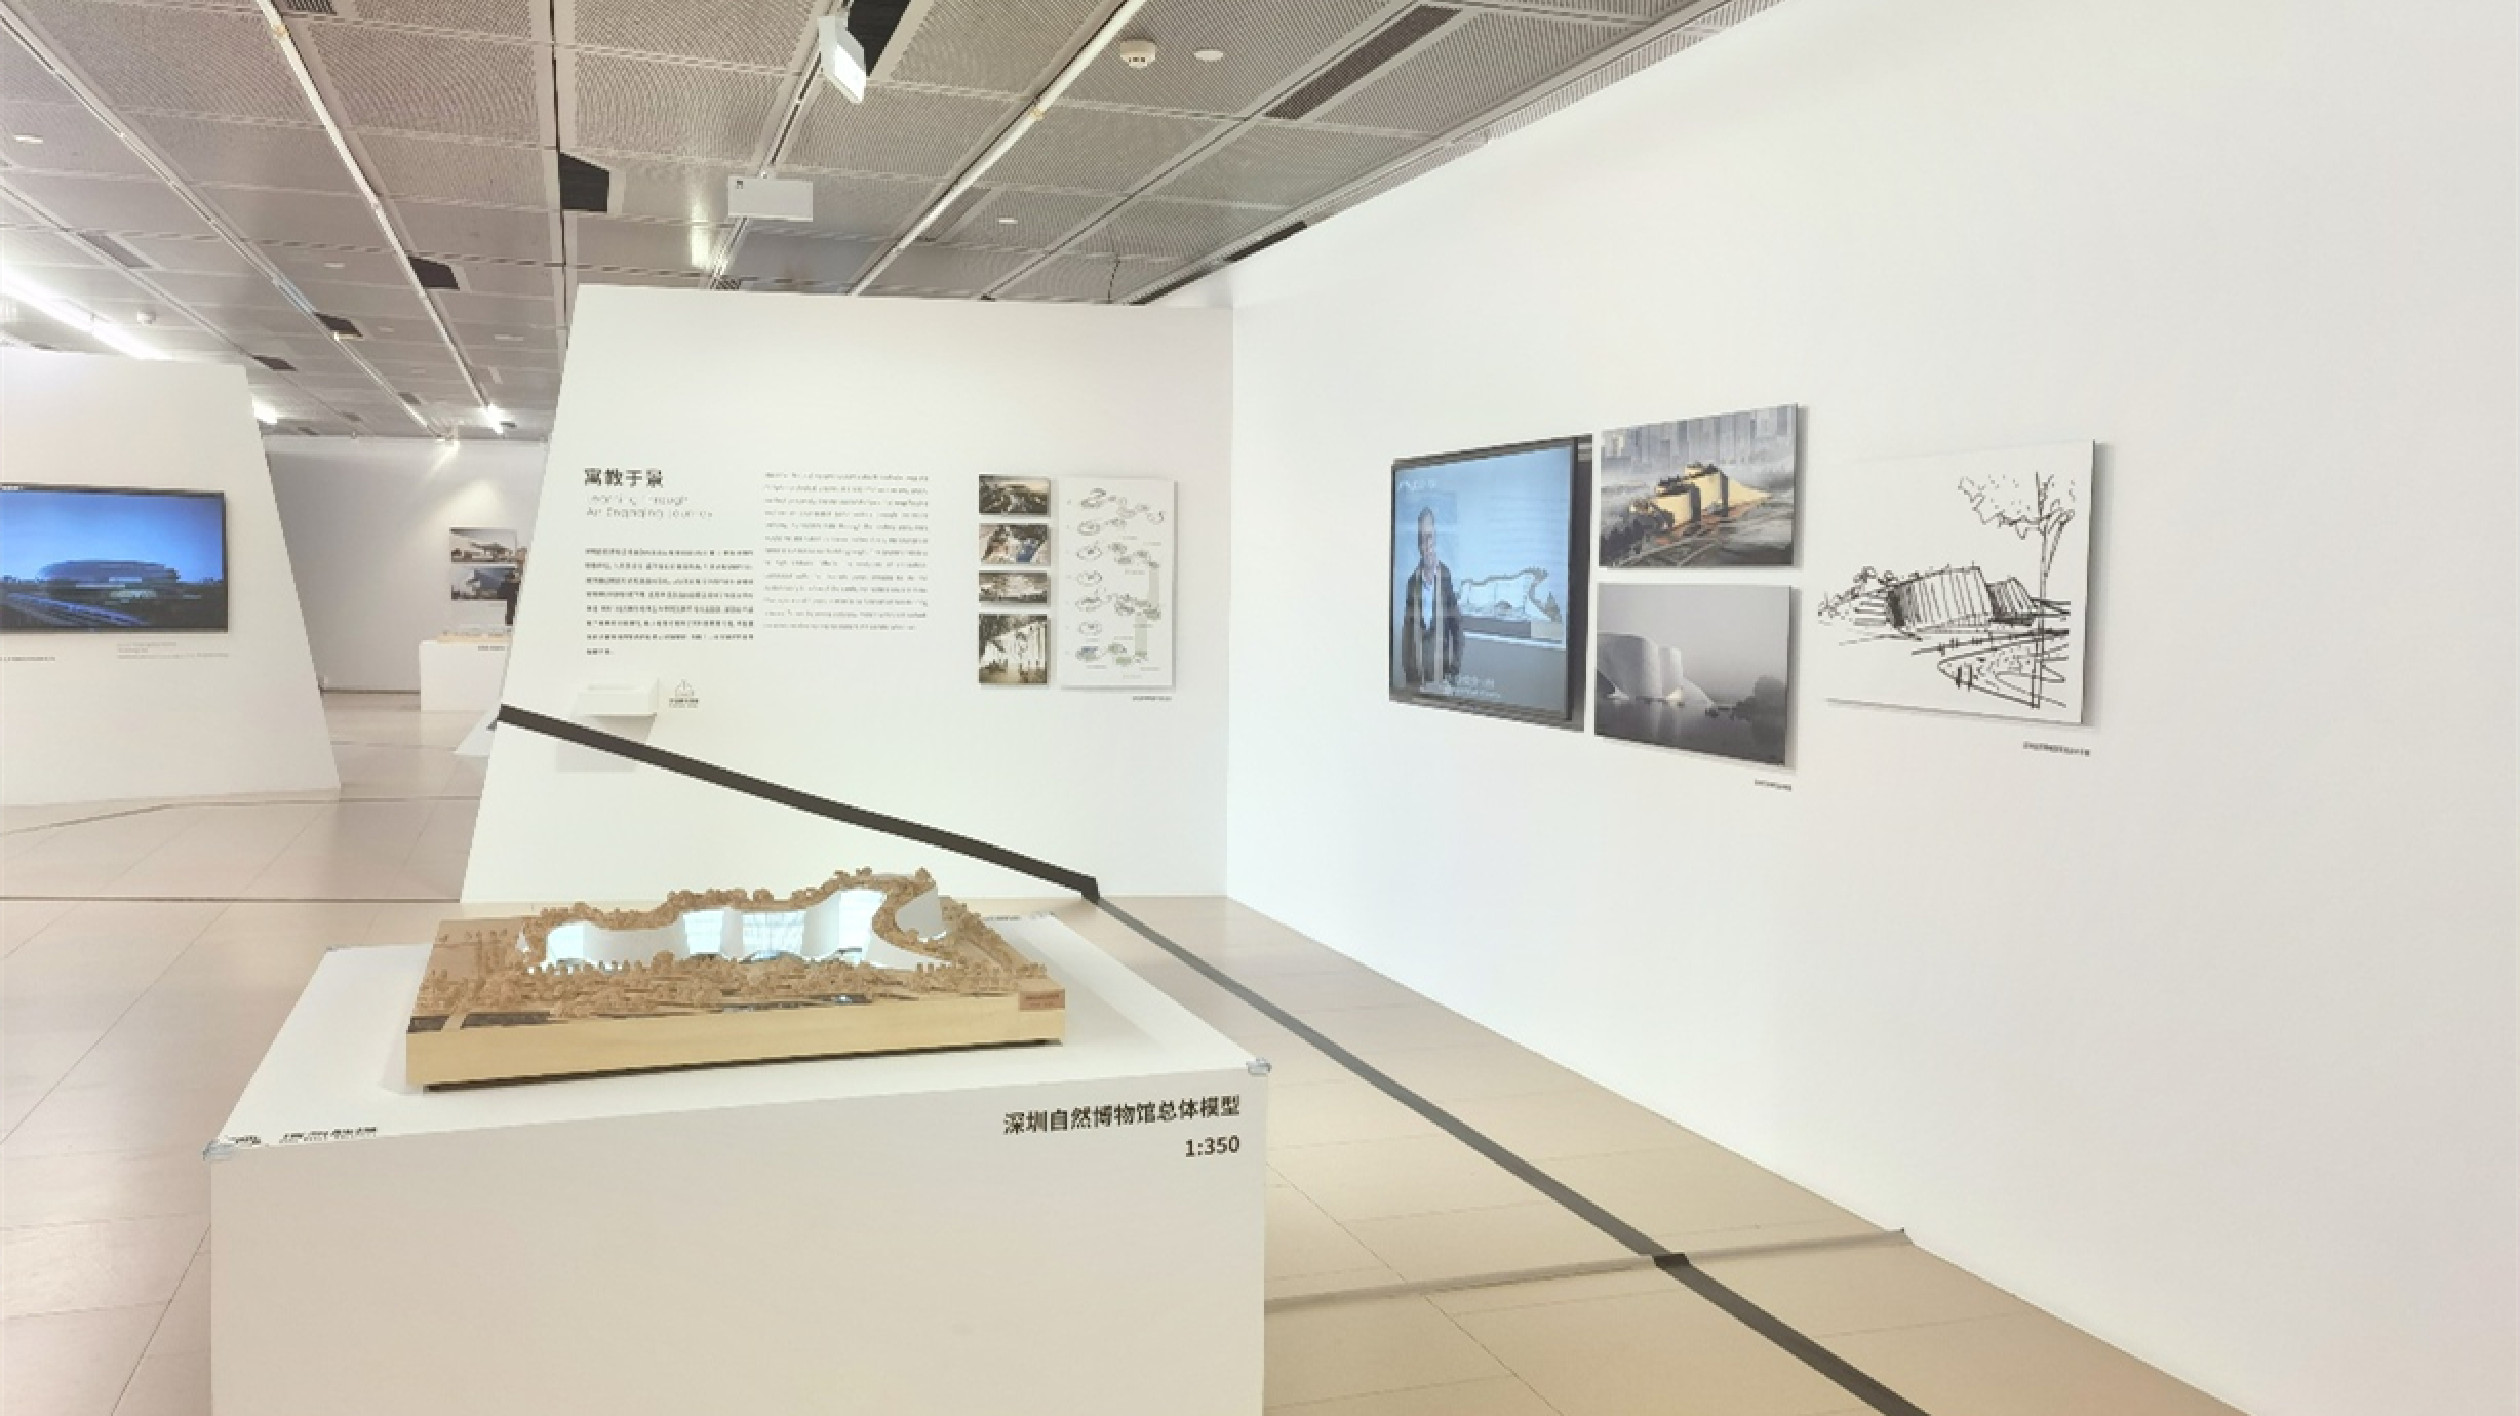 「知覺城市——新文化設施的創意與構築」展覽在深圳啟幕